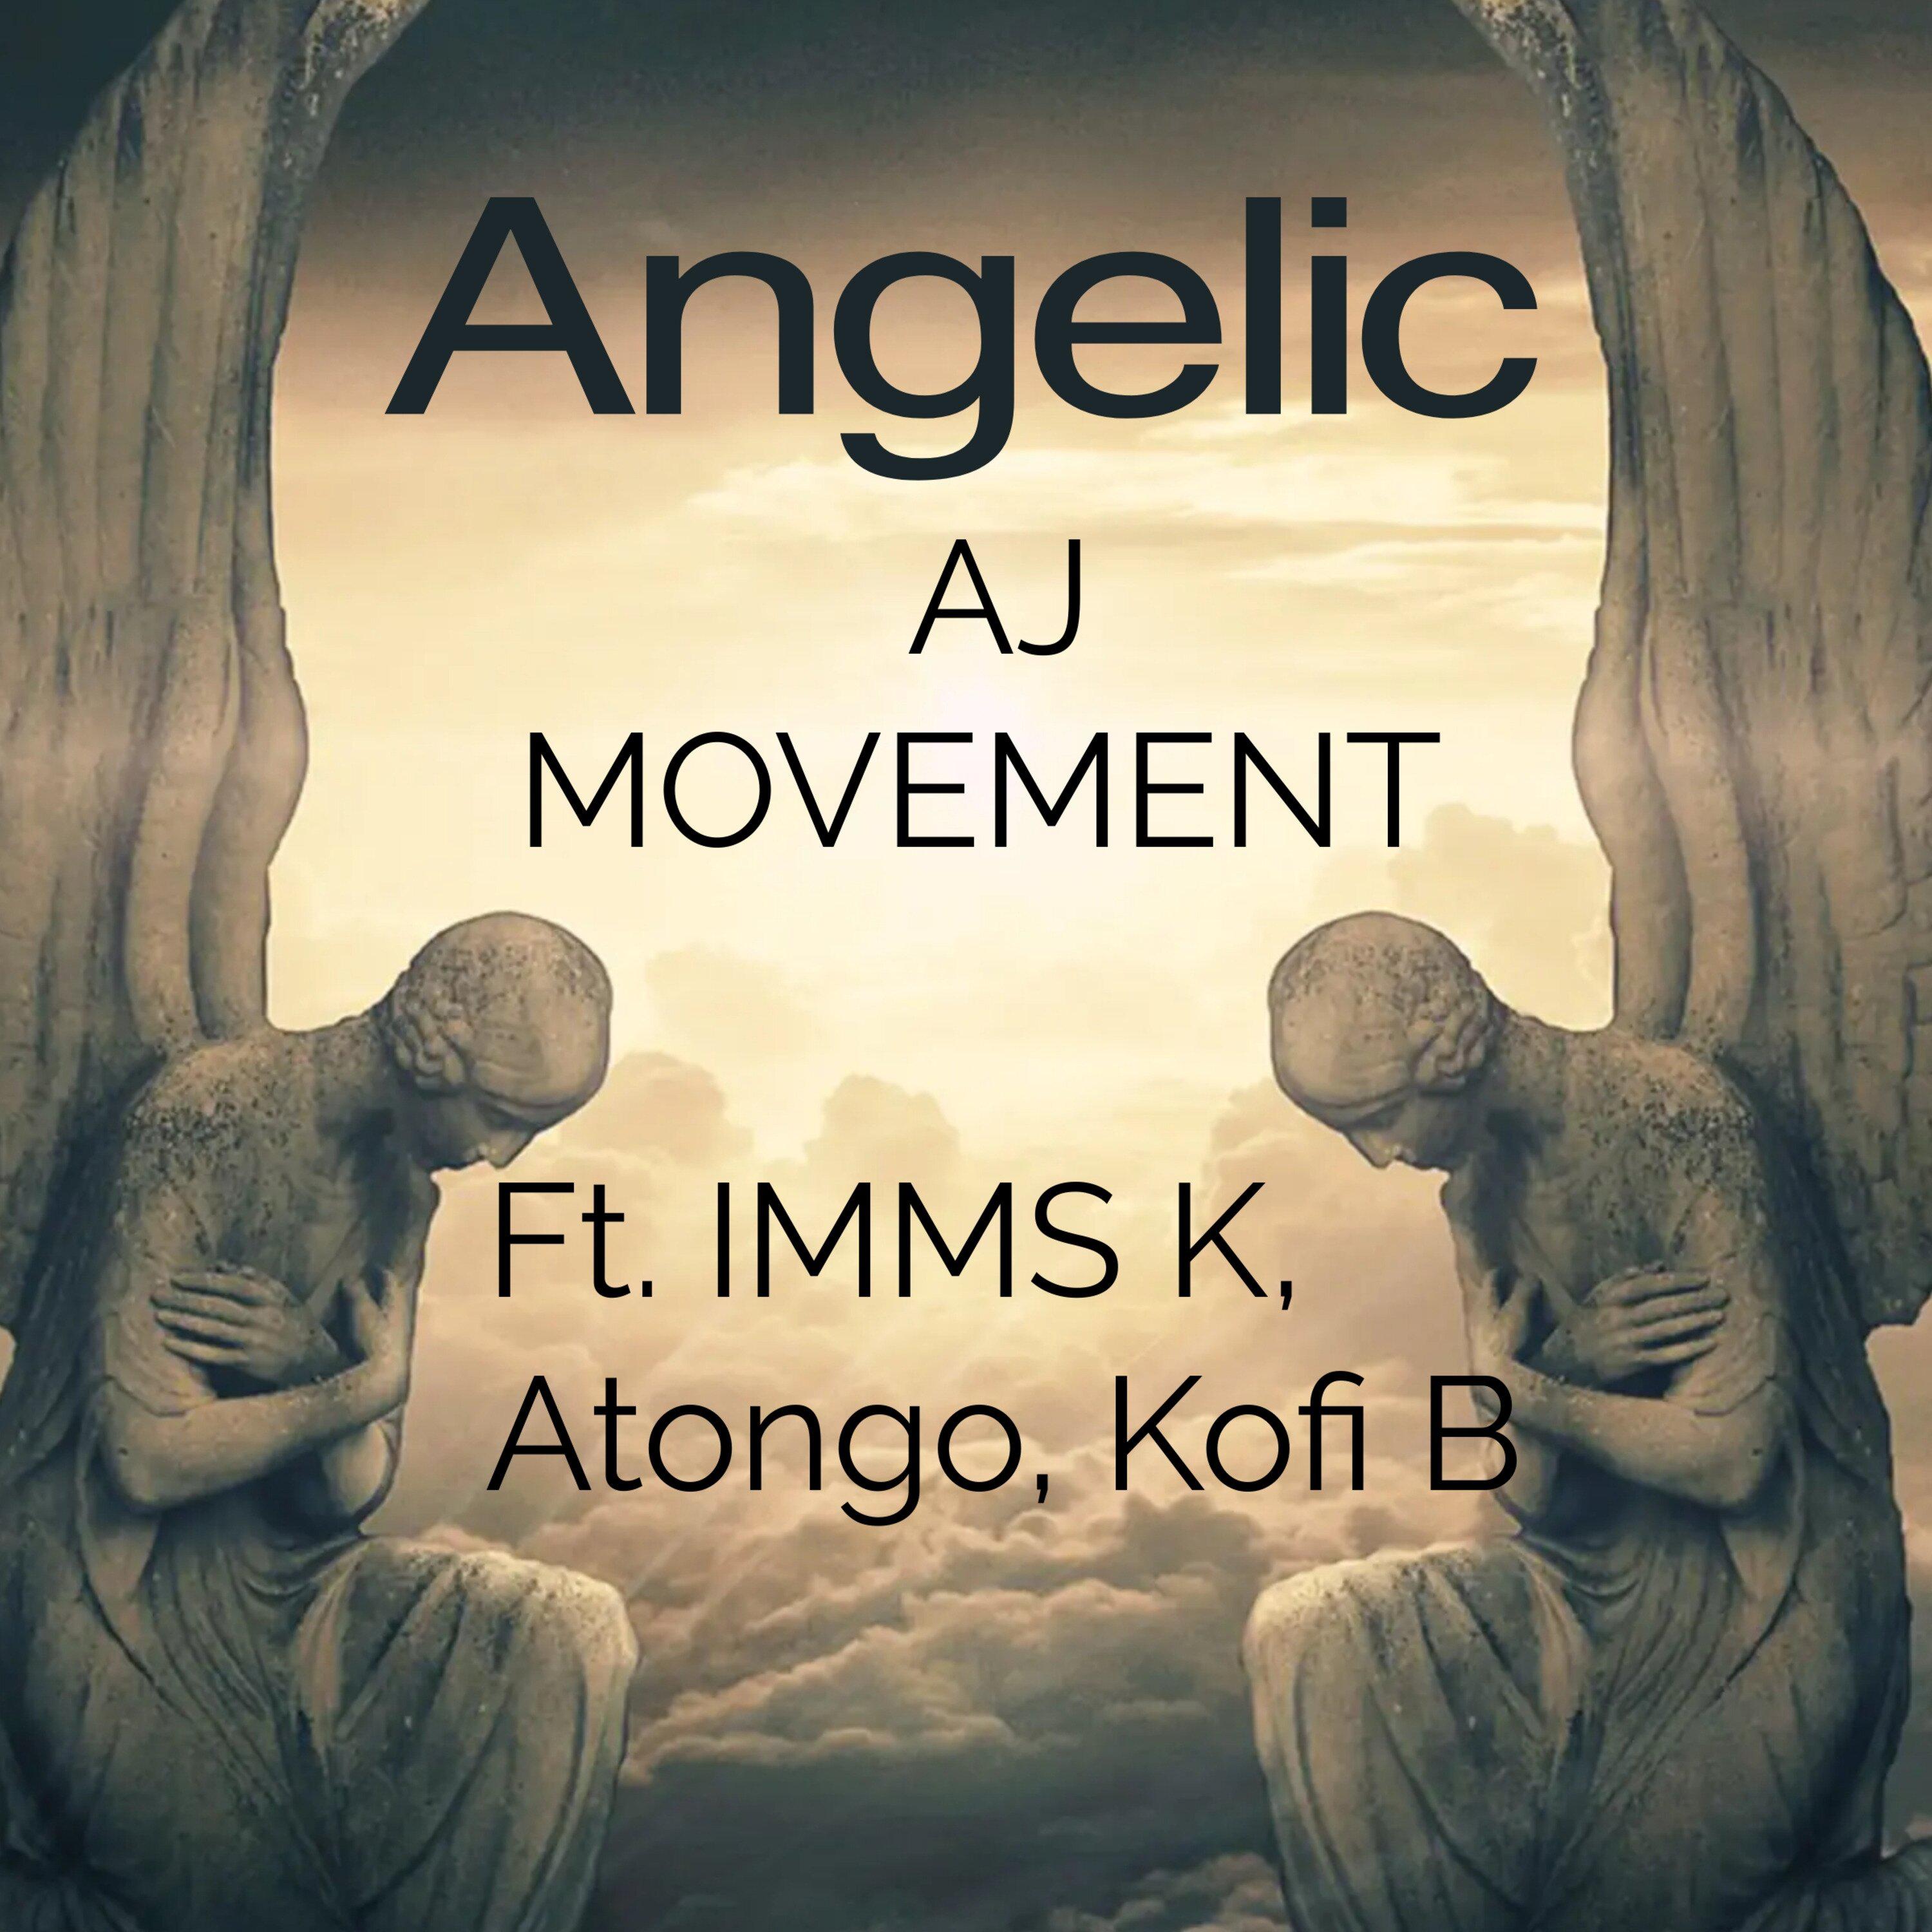 AJ MOVEMENT - Angelic